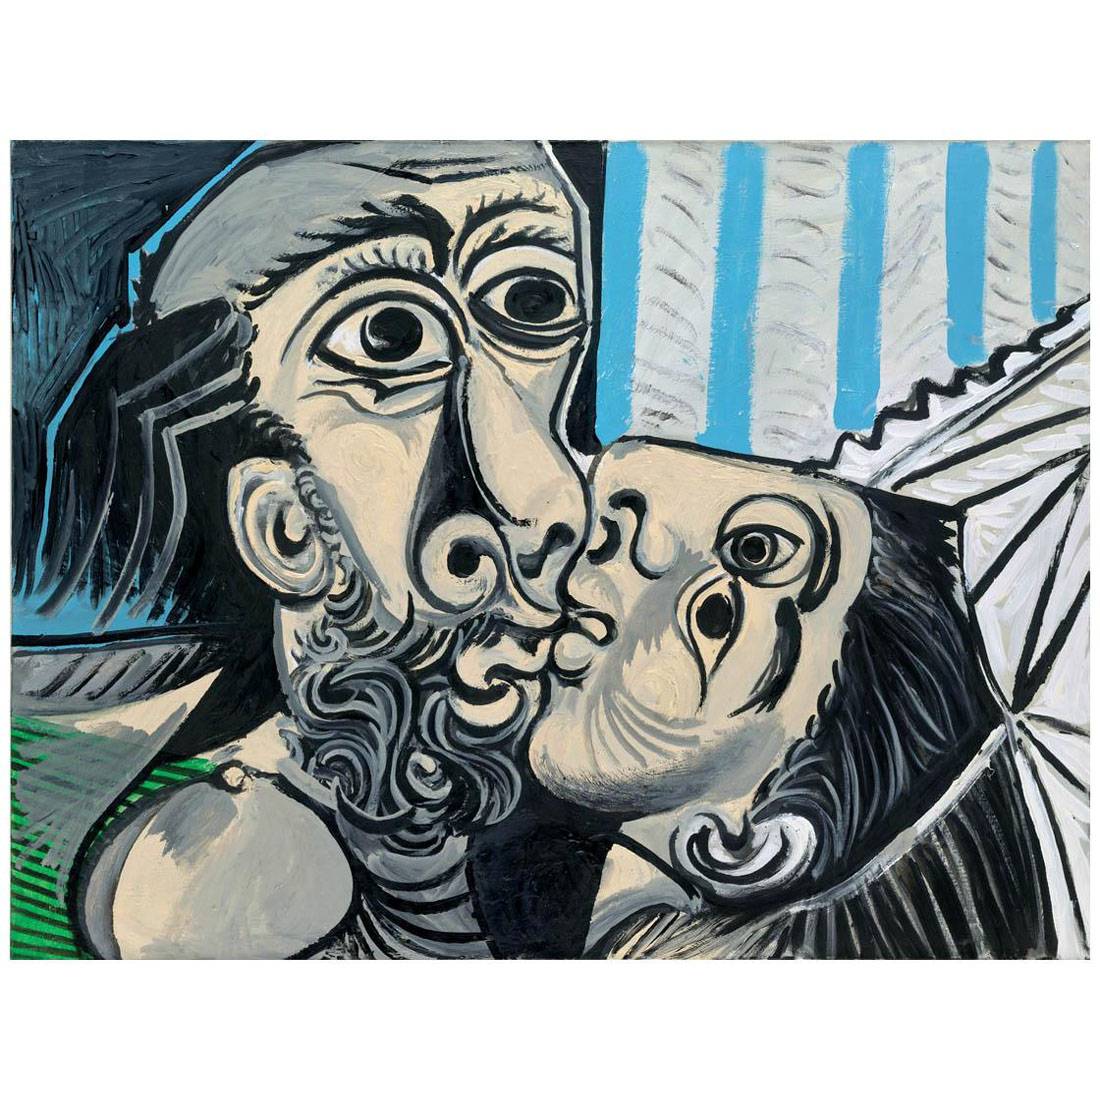 Pablo Picasso. La baiser. 1969. Musee Picasso, Paris